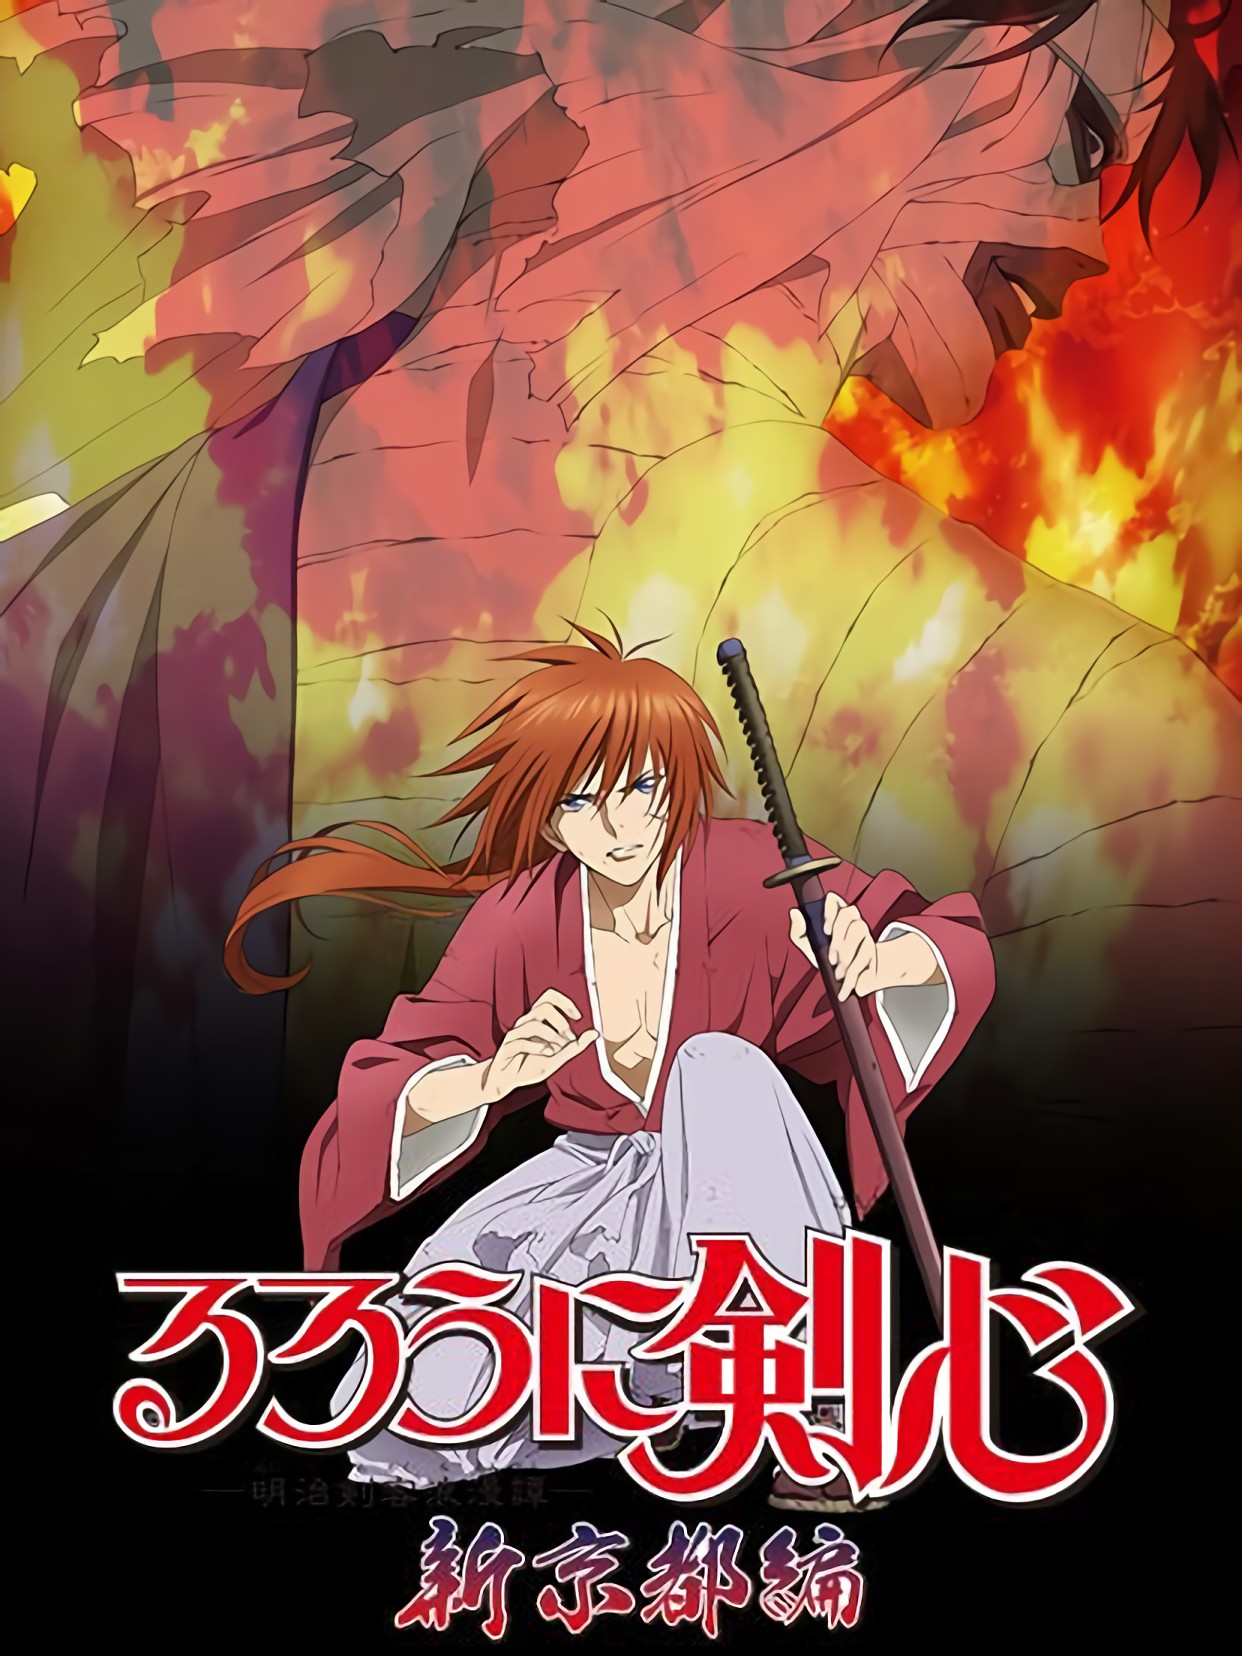 Lãng khách Kenshin: Kinh đô mới - るろうに剣心 -明治剣客浪漫譚- 新京都編